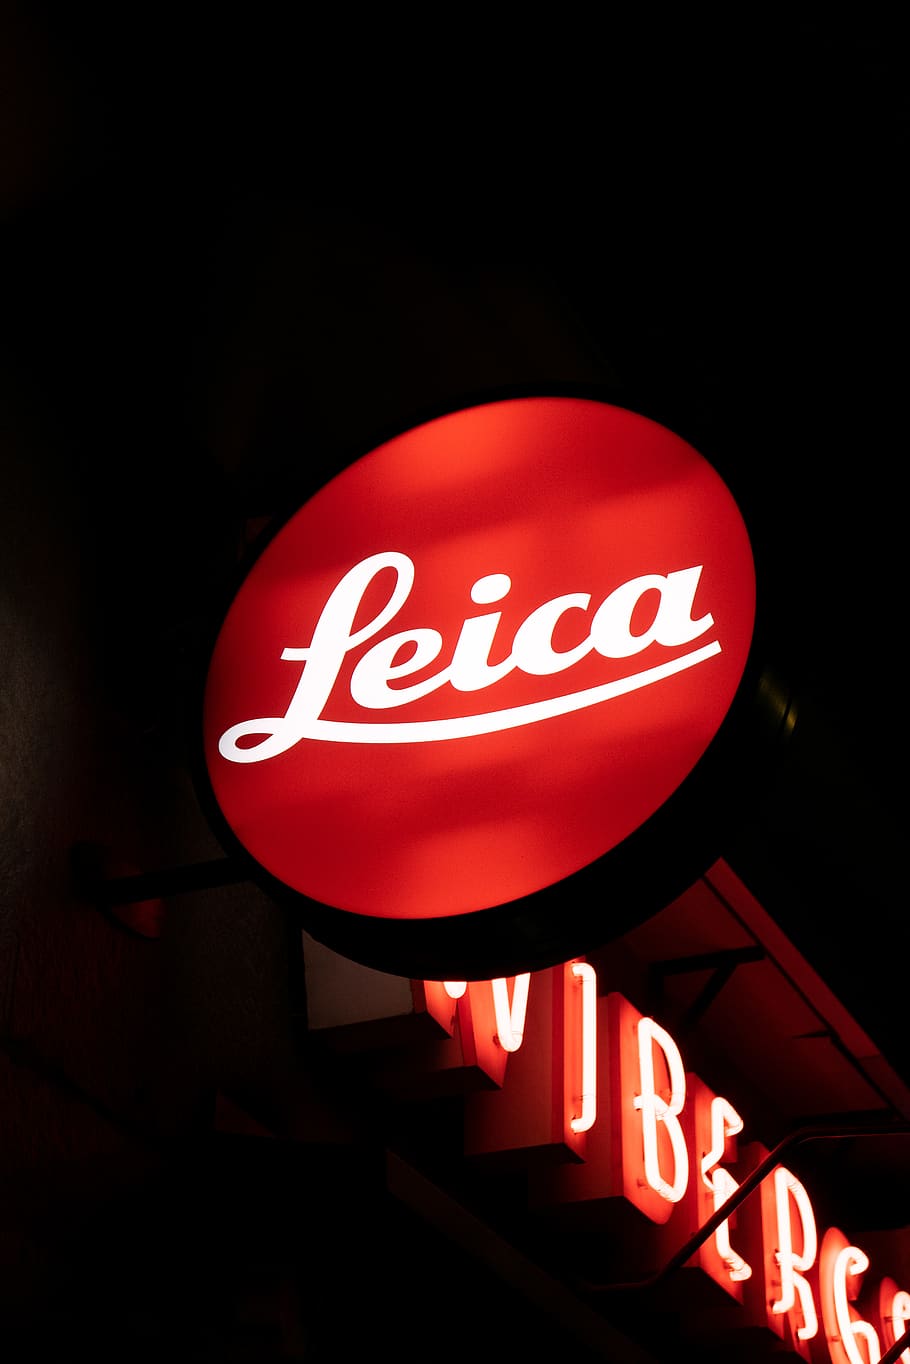 turned-on Leica signage, light, symbol, neon, sweden, stockholm